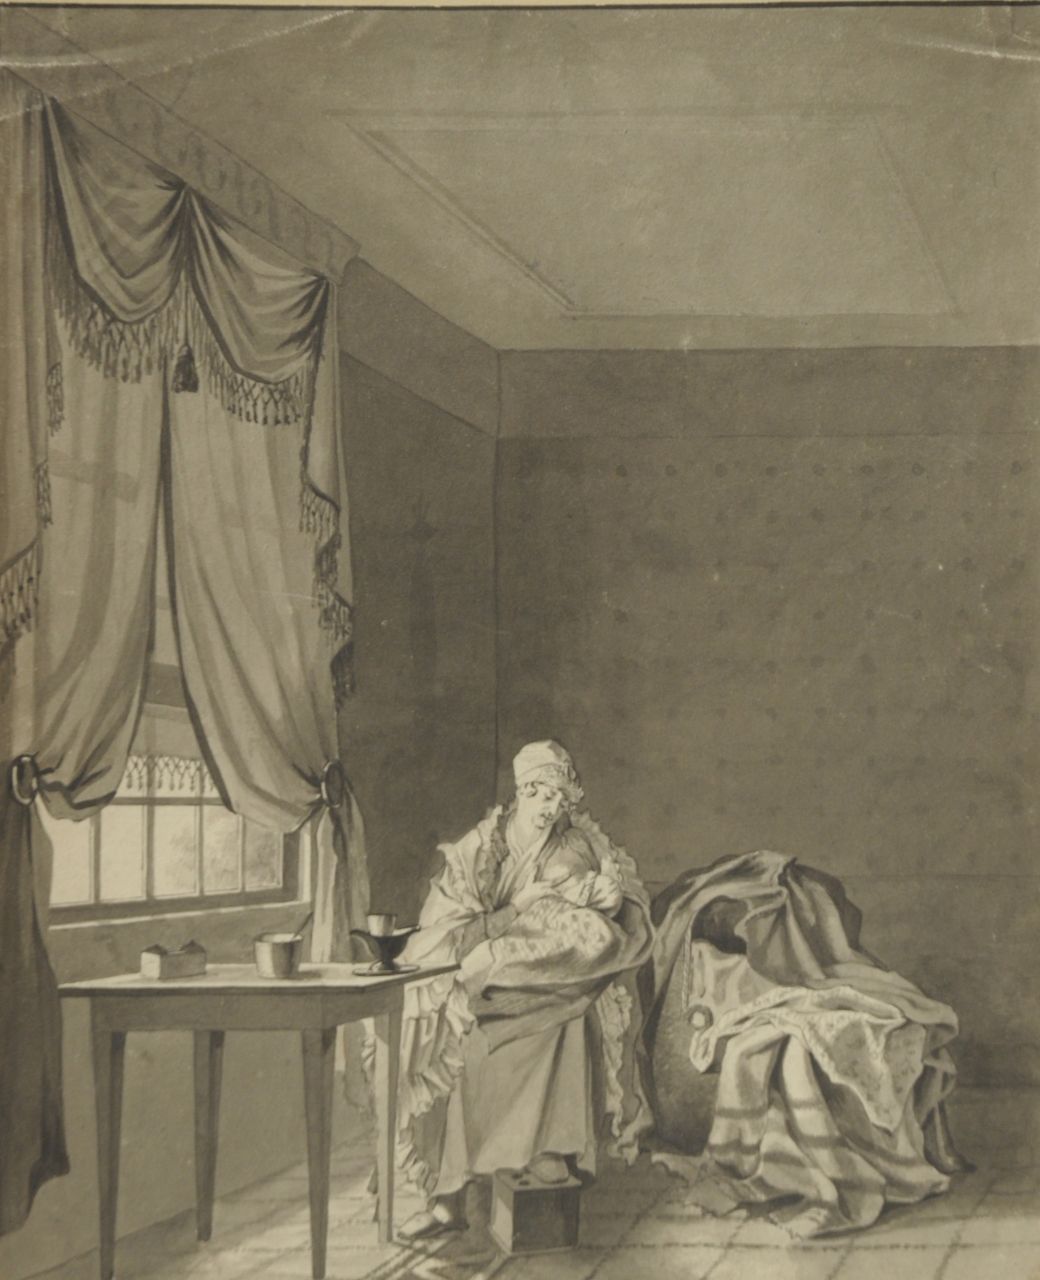 Abraham Krayestein | Interieur met vrouw en kind, pen, penseel en inkt op papier, 34,4 x 28,2 cm, gesigneerd m.b. op opzetvel en gedateerd 1829